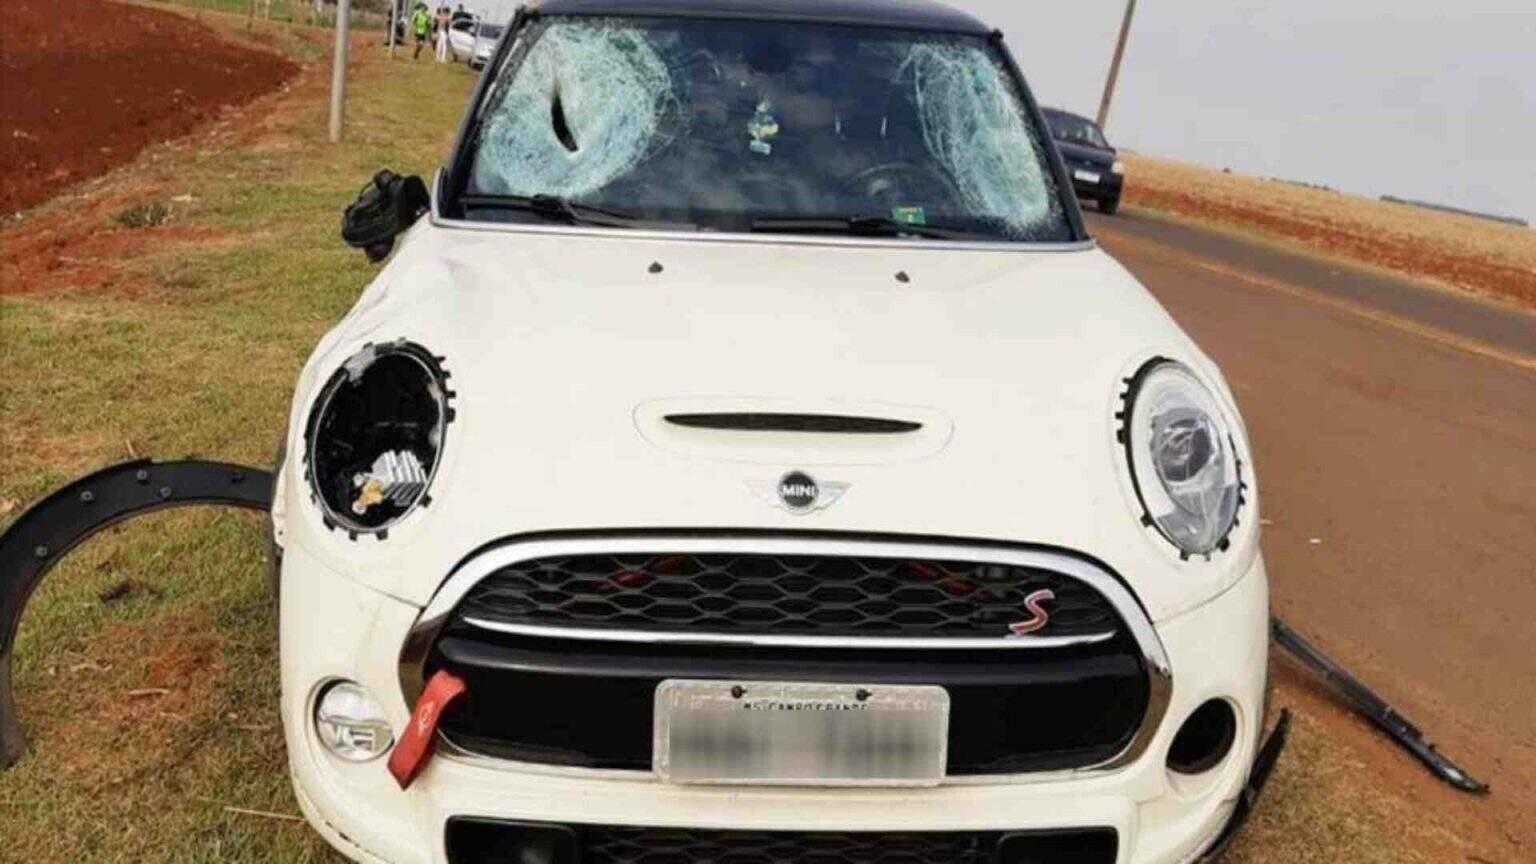 Motorista de Mini Cooper que atropelou 3 e matou jovem paga fiança de R$ 13 mil e ganha liberdade